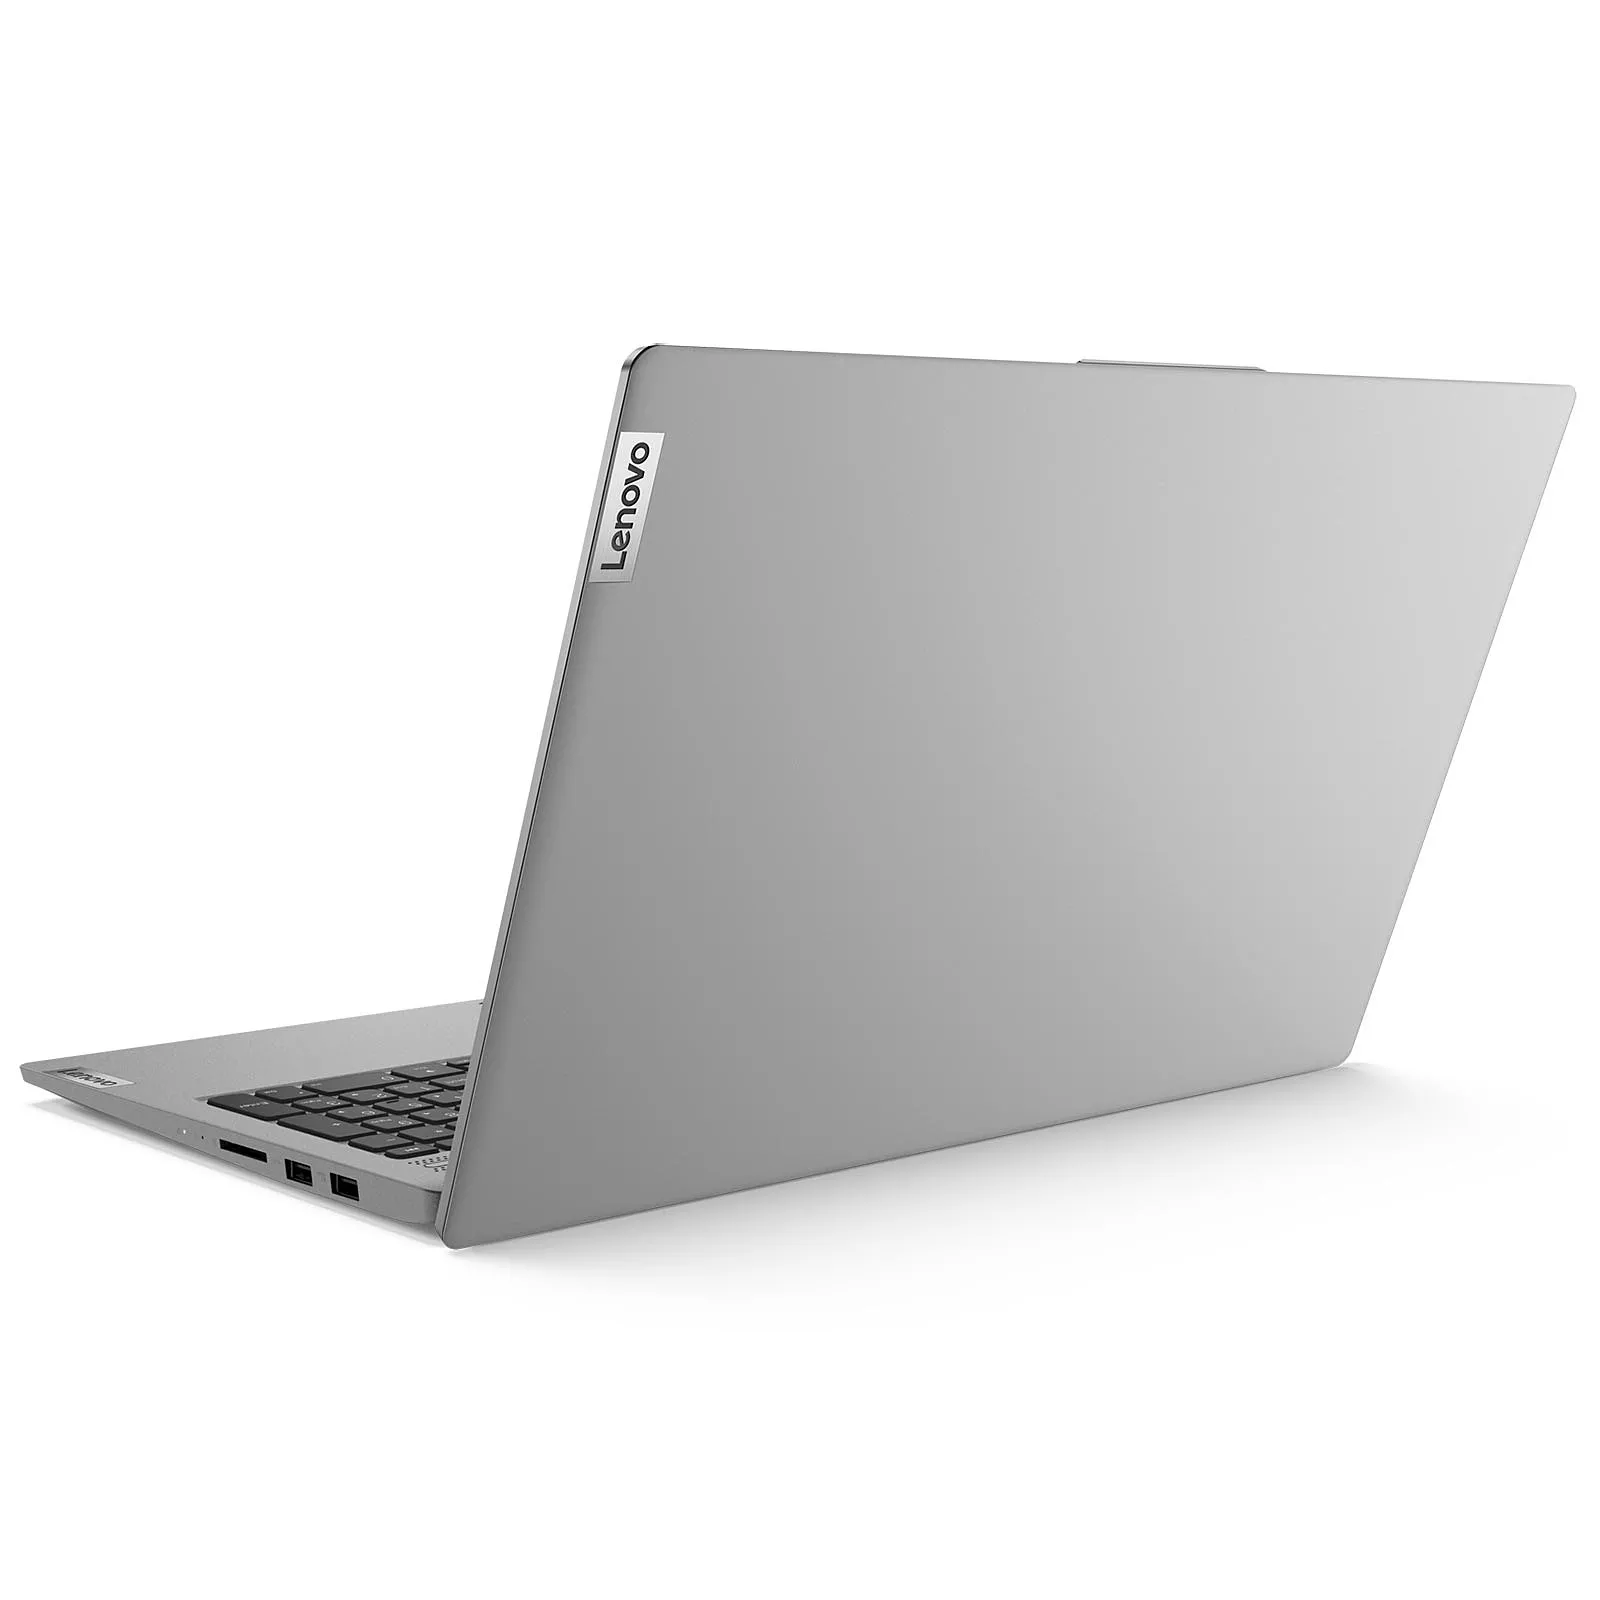 Lenovo IdeaPad 5 15ITL05 [ i7-1165G7 | Nvidia MX450 | 8GB Ram ]